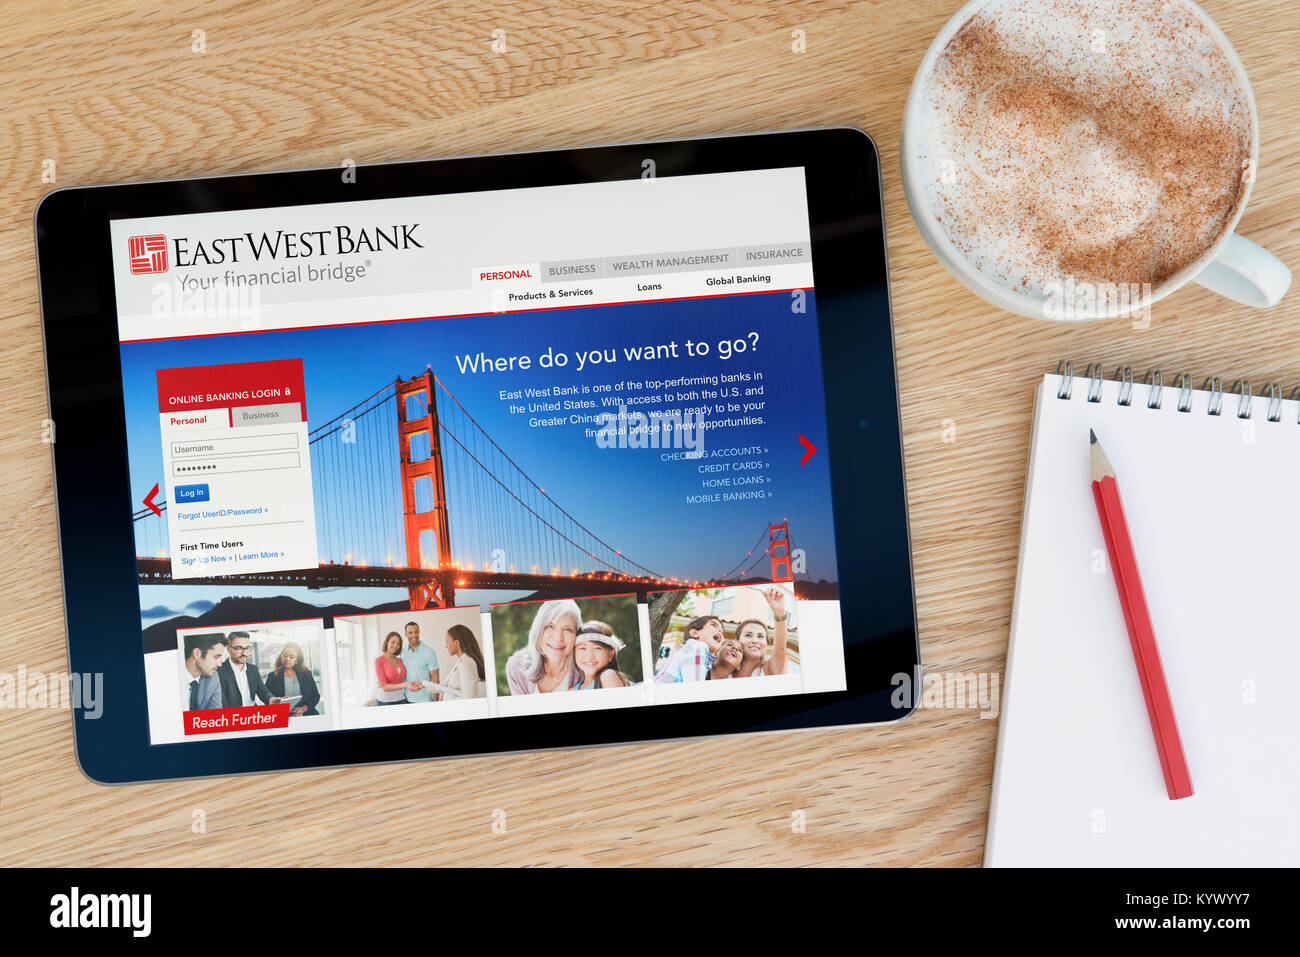 East West Bank sitio web en un iPad, en una mesa de madera junto a un bloc de notas, lápiz y la taza de café (Editorial) Foto de stock